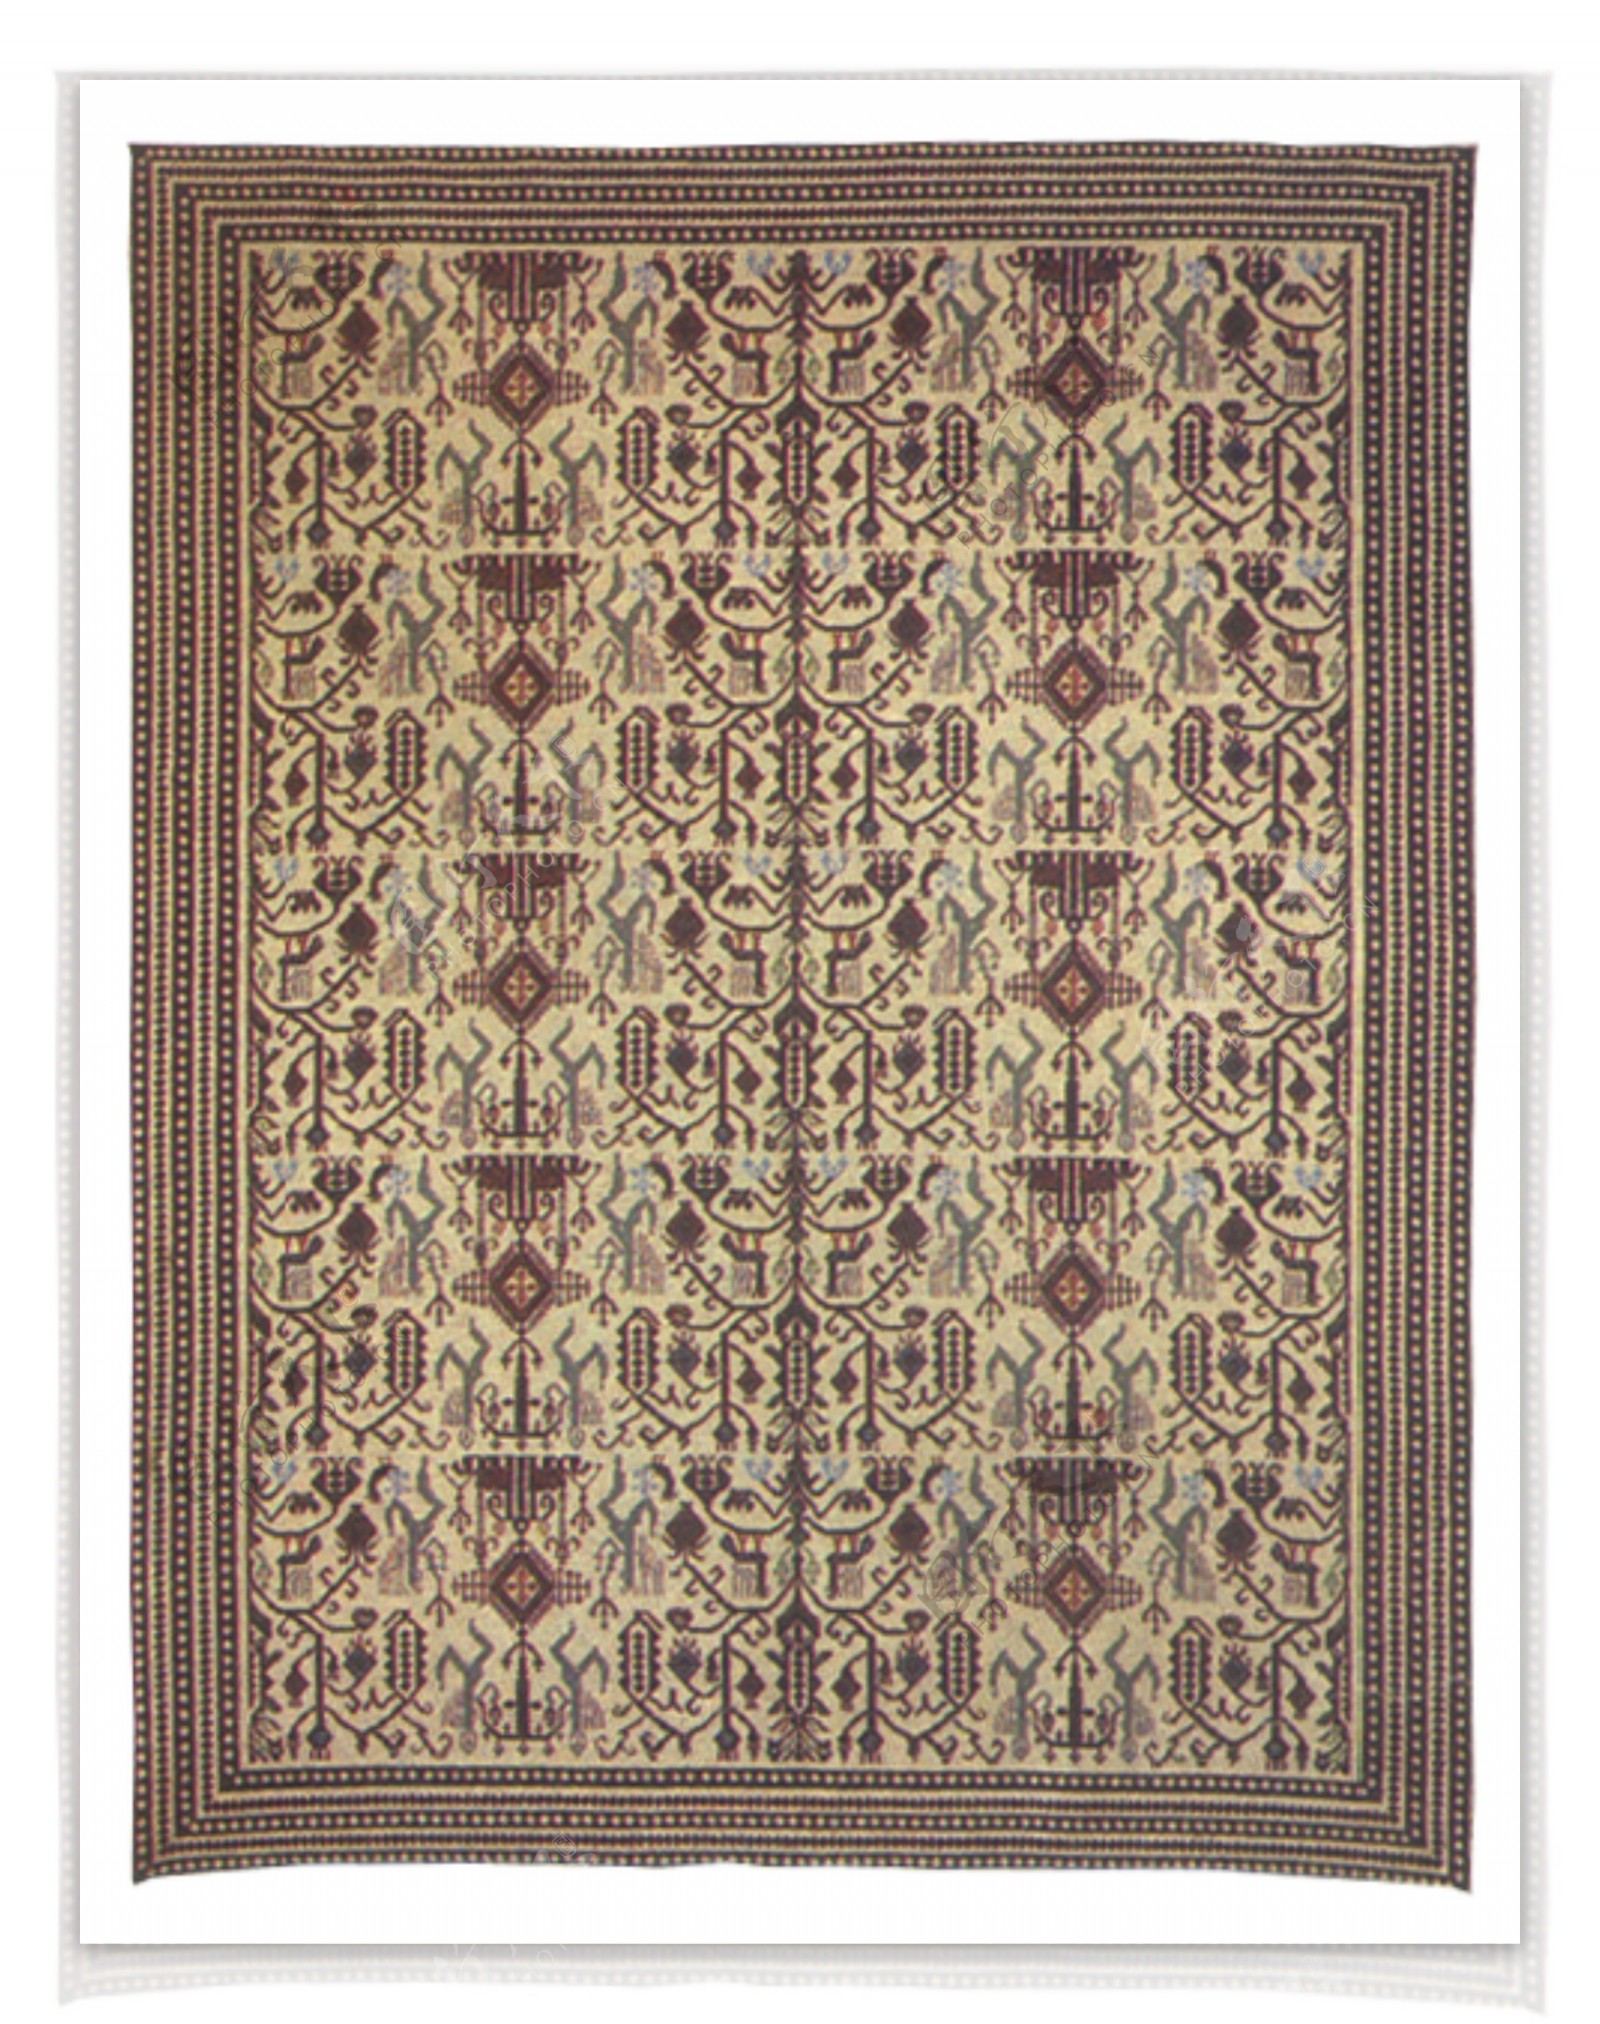 花毯高质量材质贴图素材PSD格式20080804更新25